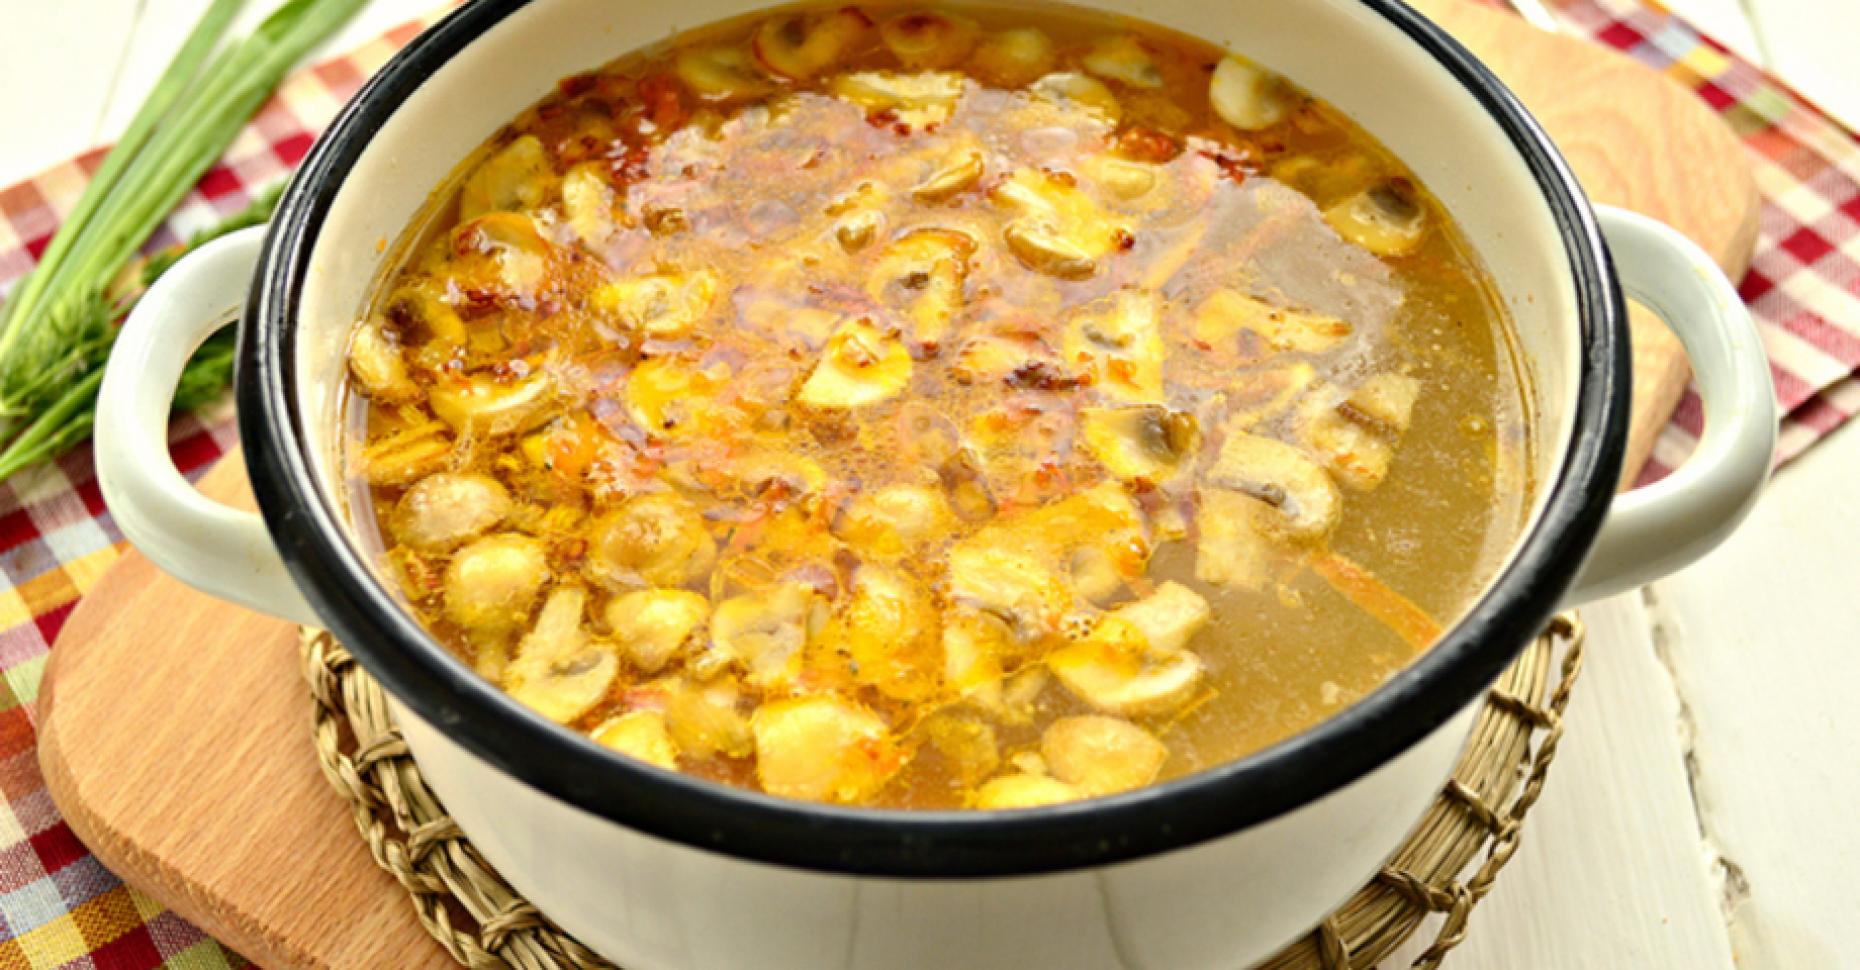 Супы на курином бульоне вкусные рецепты с фото